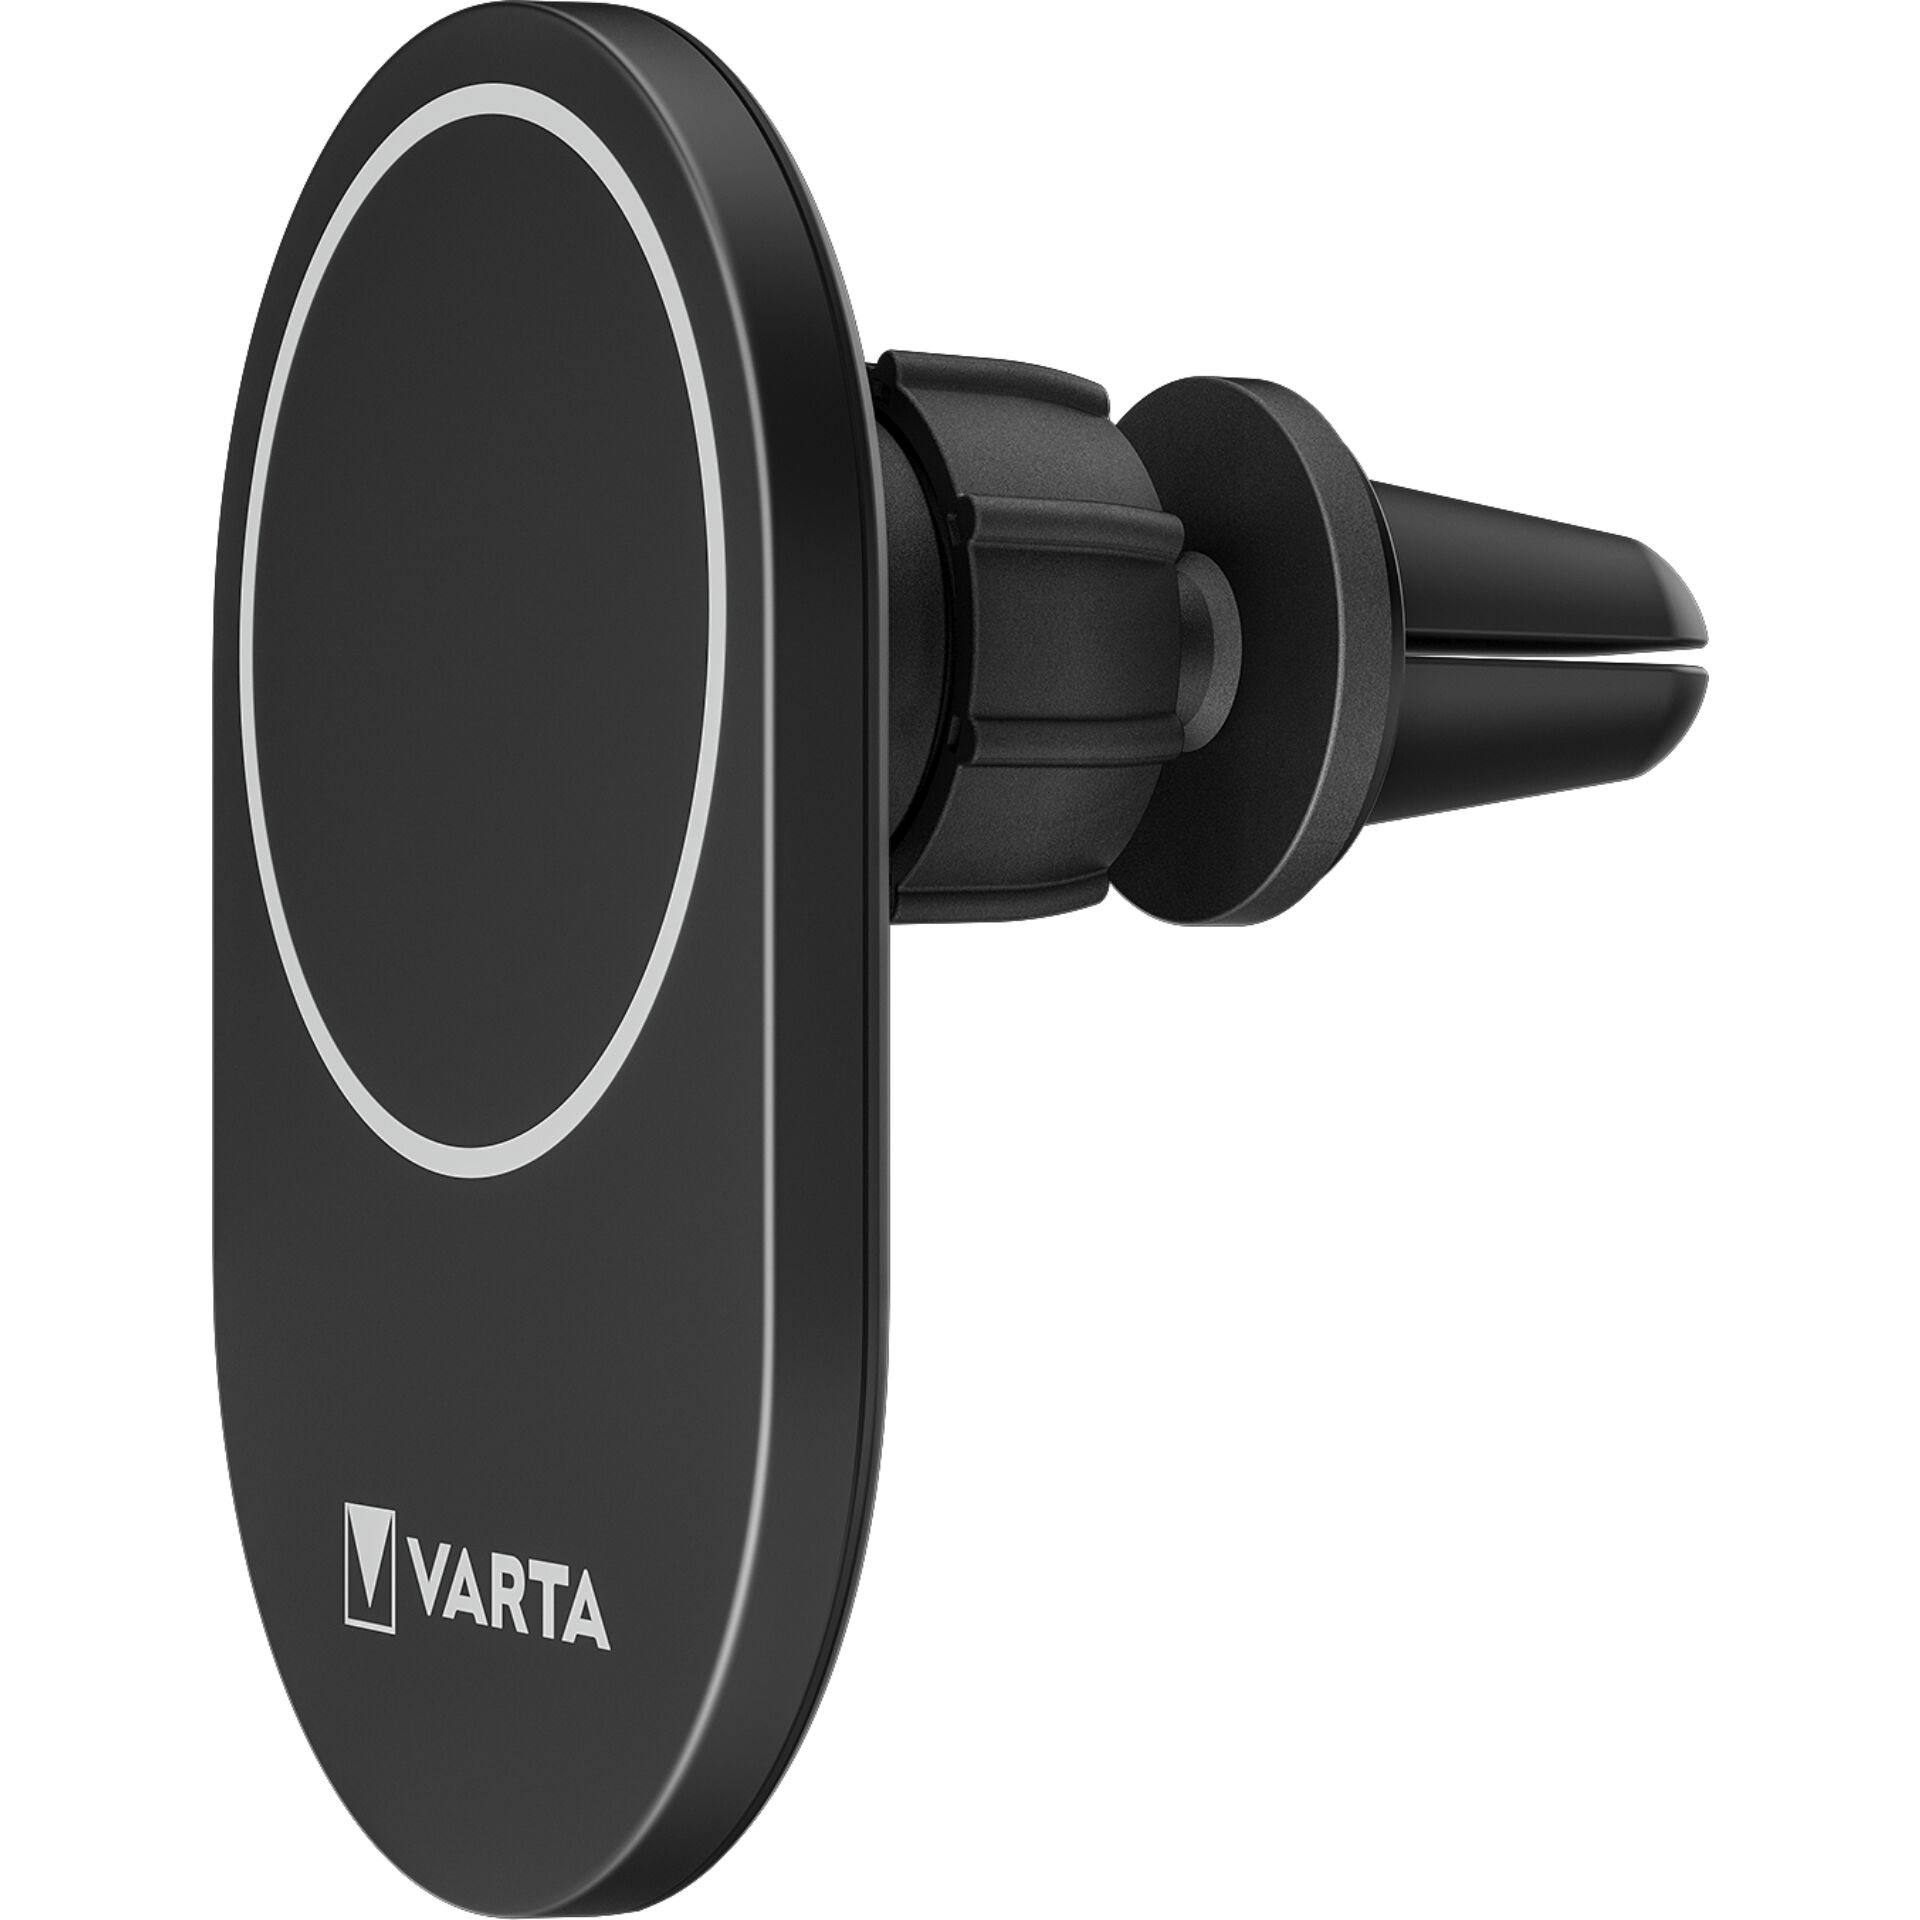 Varta Mag Pro Qi Wireless Car Charger 15W          57902101111